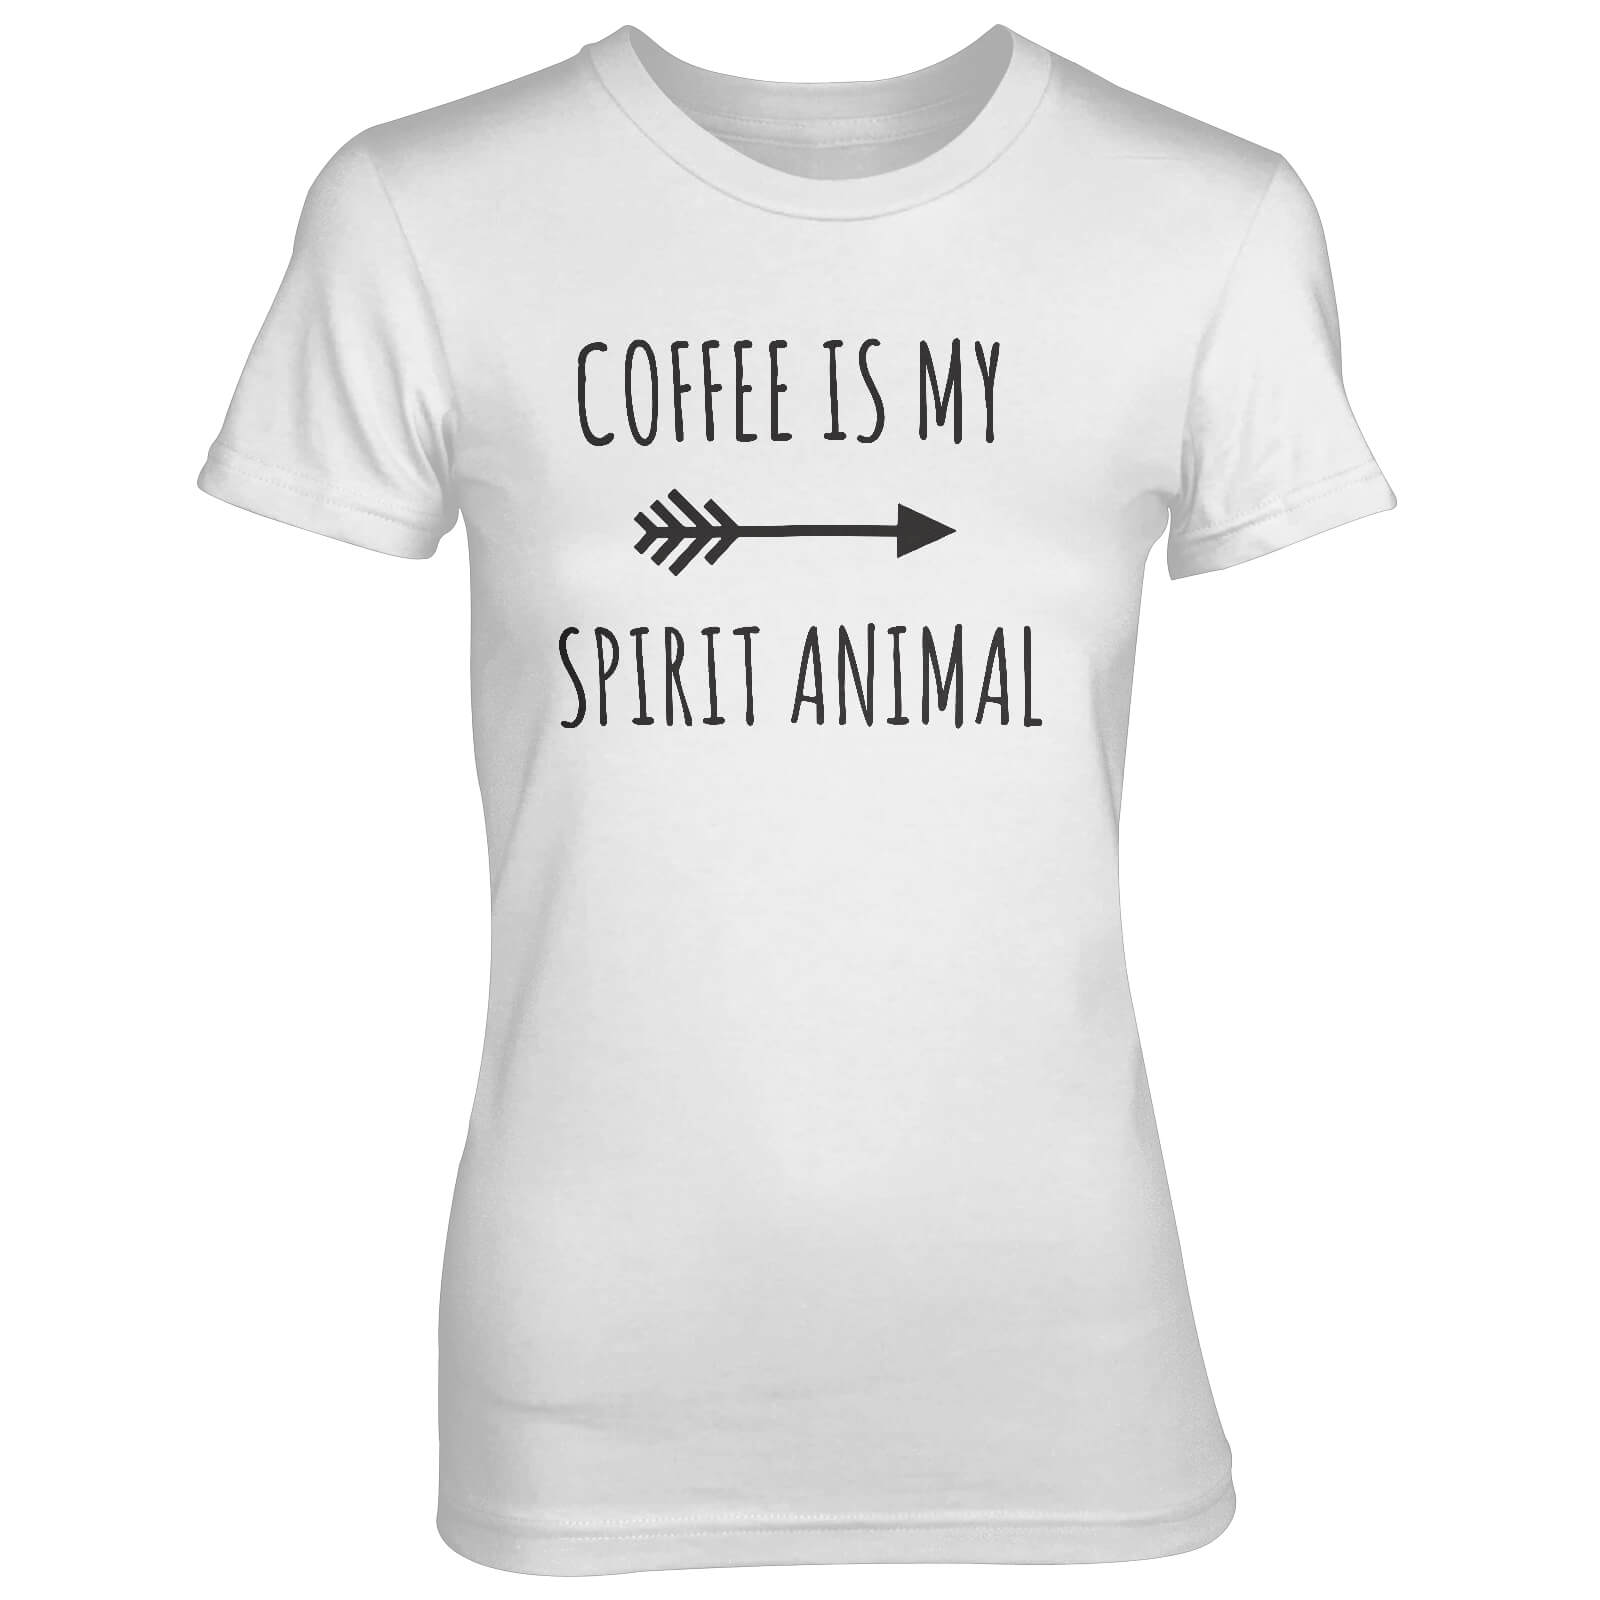 Coffee Is My Spirit Animal Women's White T-Shirt - S - White